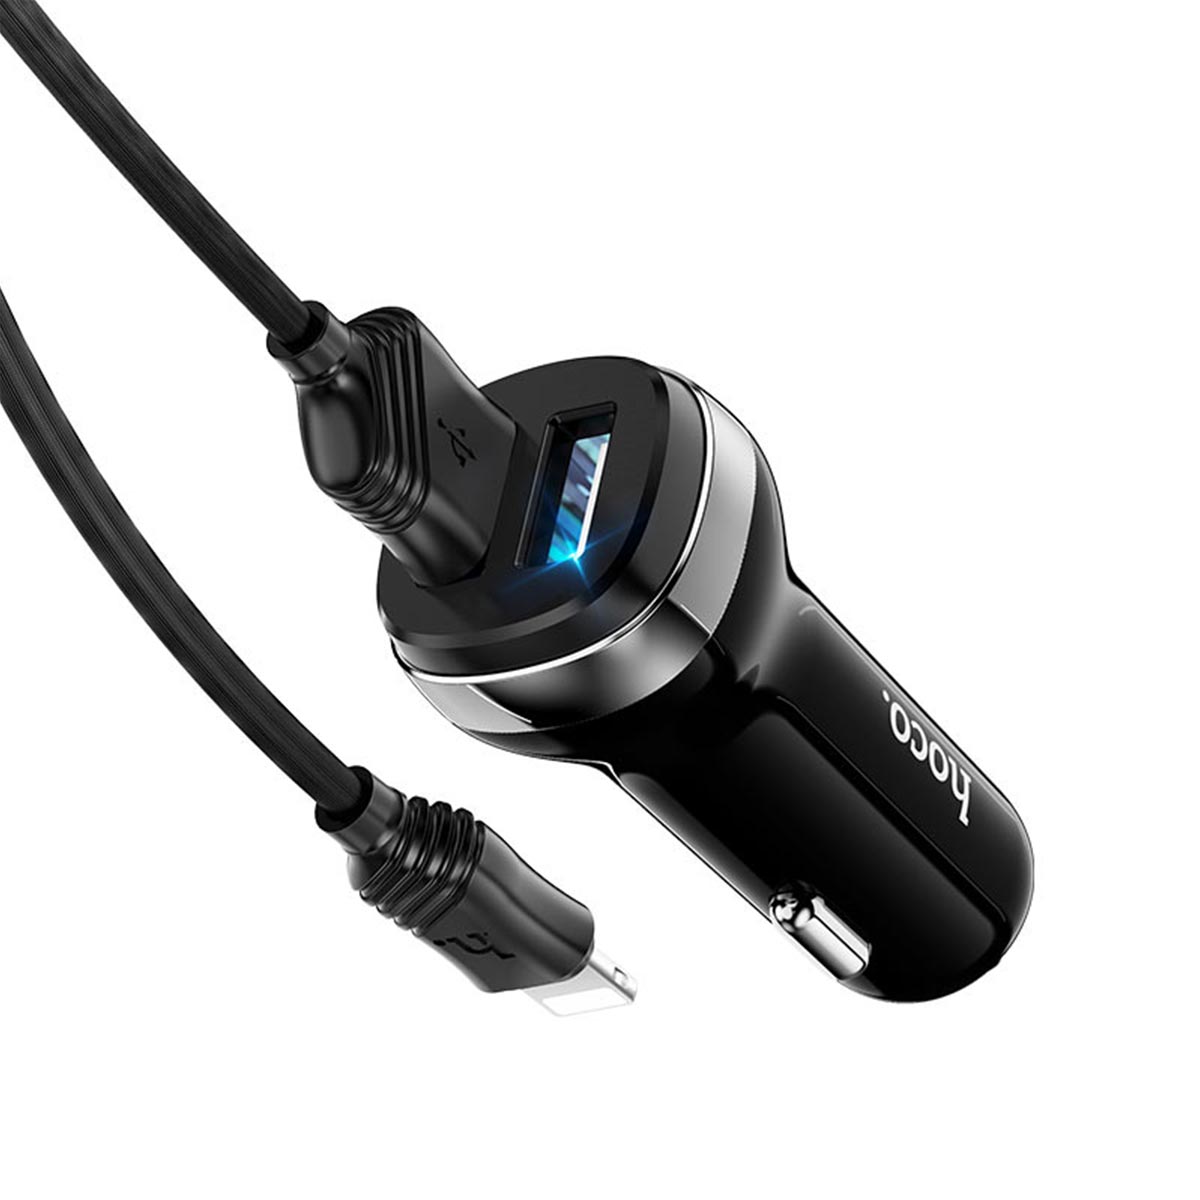 АЗУ (автомобильное зарядное устройство) HOCO Z40 Superior, 2 USB порта, кабель APPLE Lightning 8-pin, 1 метр, цвет черный